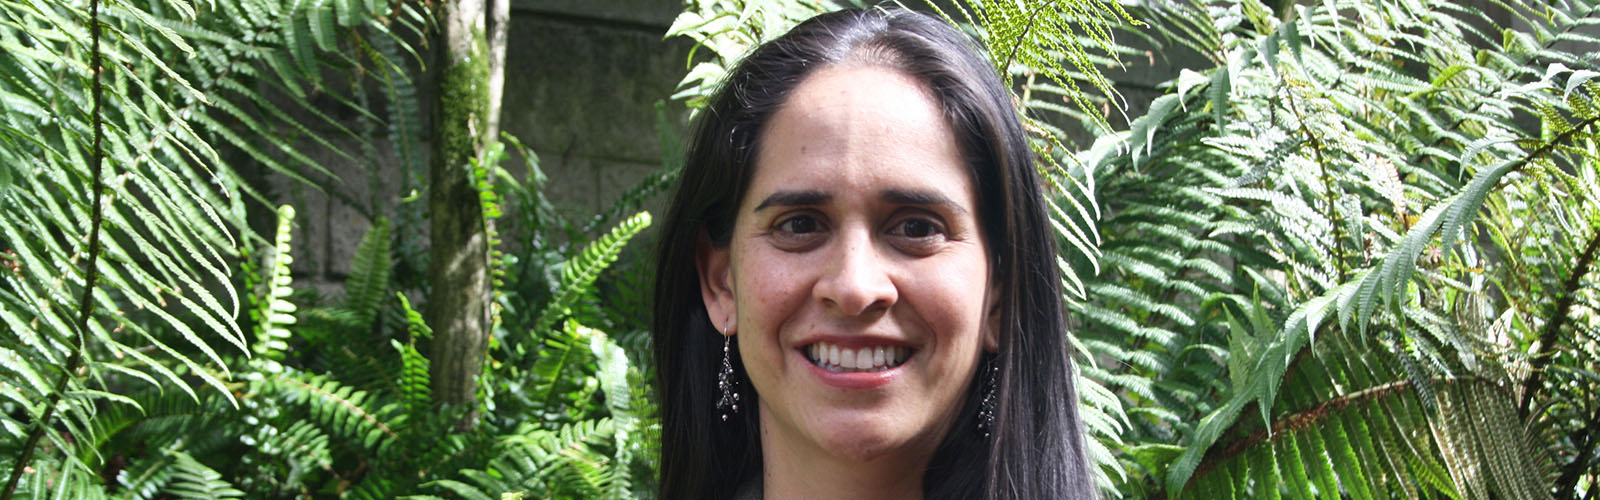 Ángela María Yepes Sánchez, nueva directora del Consultorio Jurídico